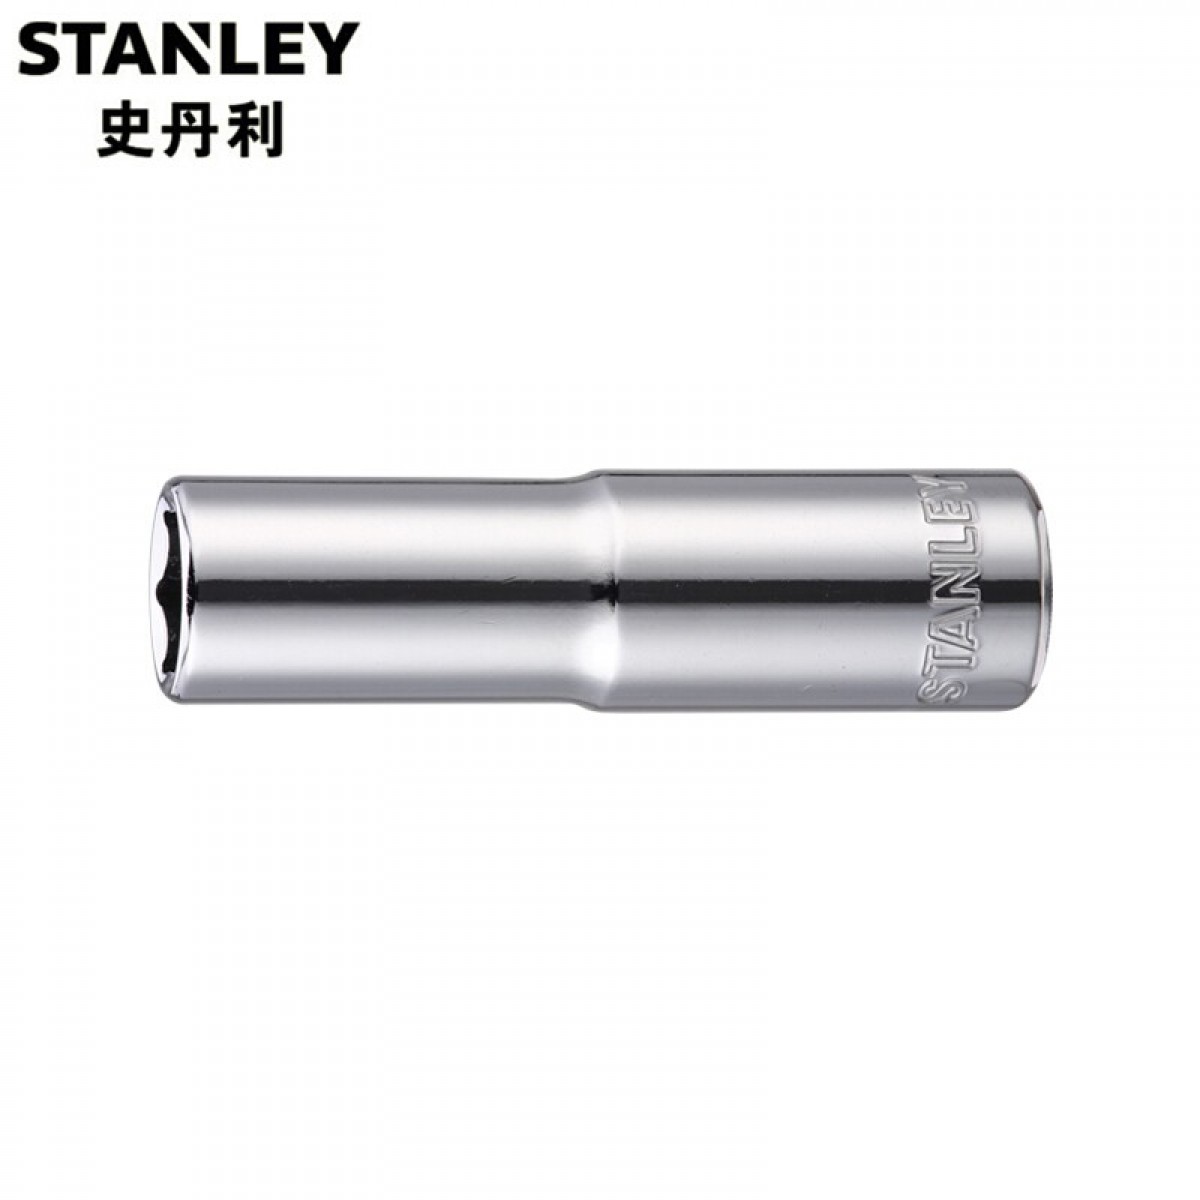 史丹利 96-370-1-22 12.5MM系列公制6角长套筒24mm